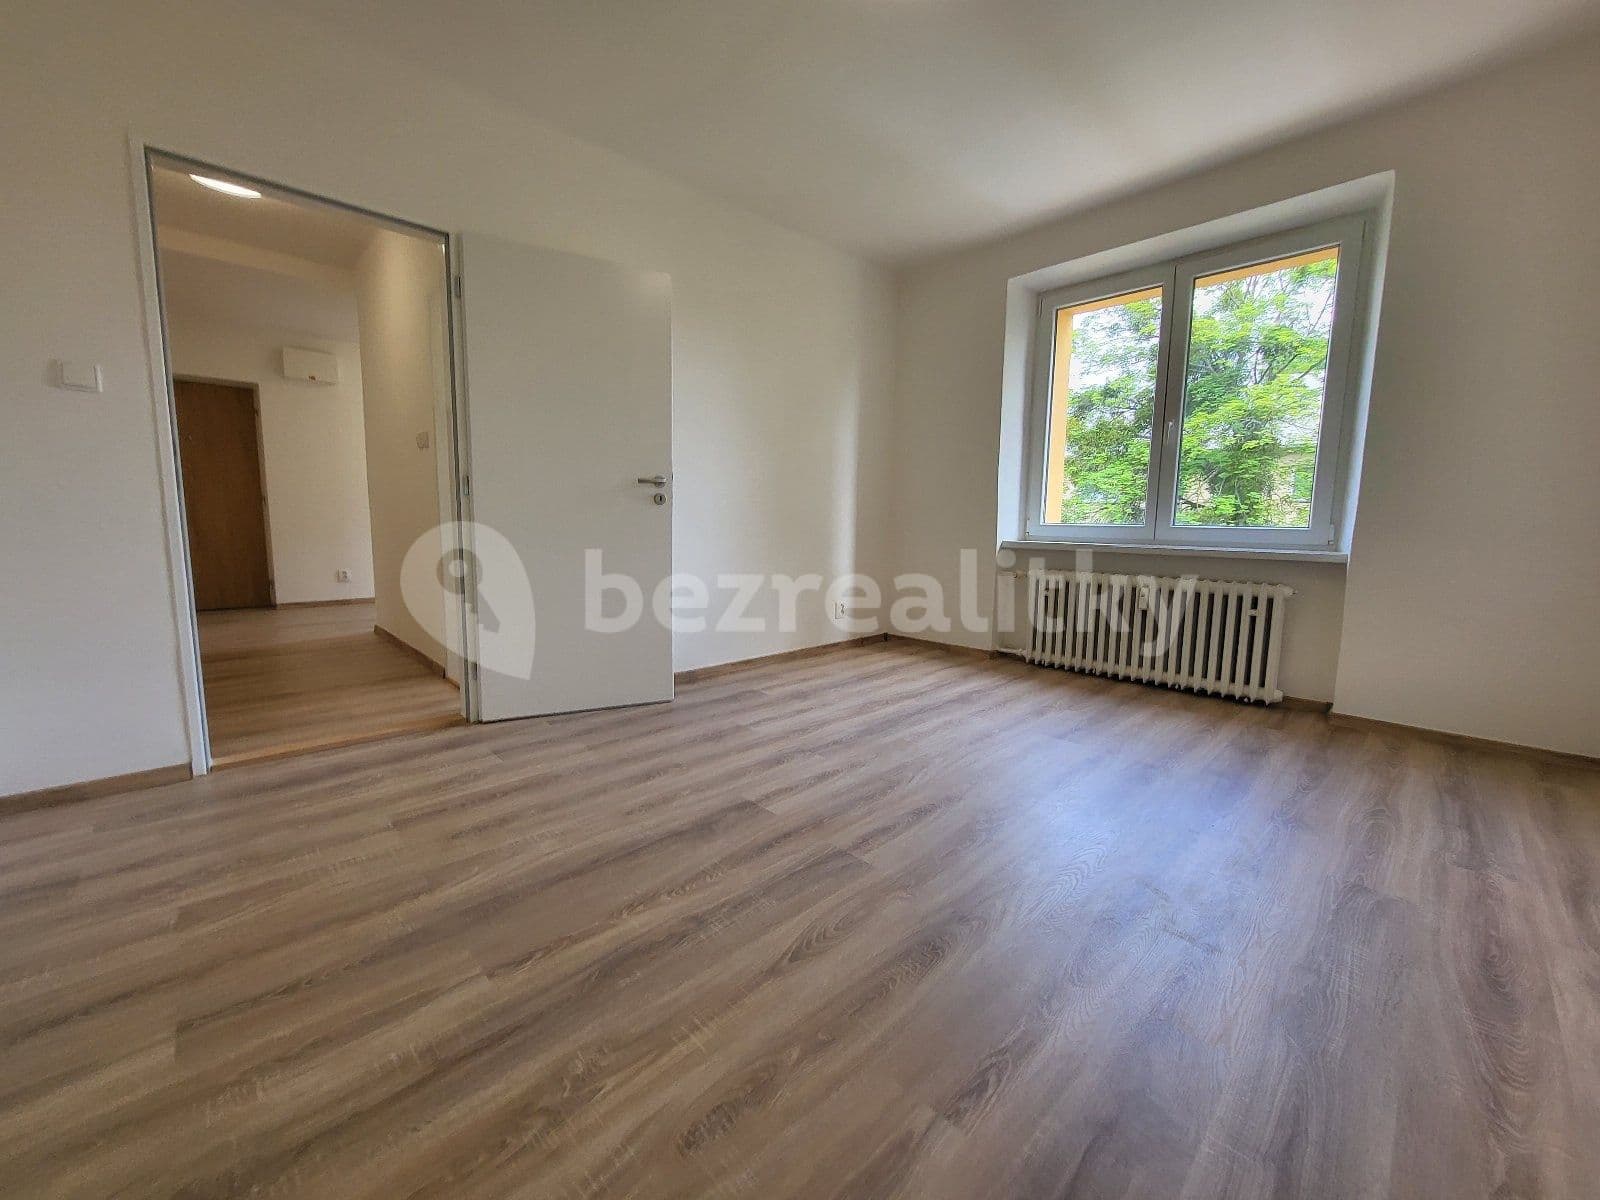 3 bedroom flat to rent, 68 m², Dukelská, Havířov, Moravskoslezský Region